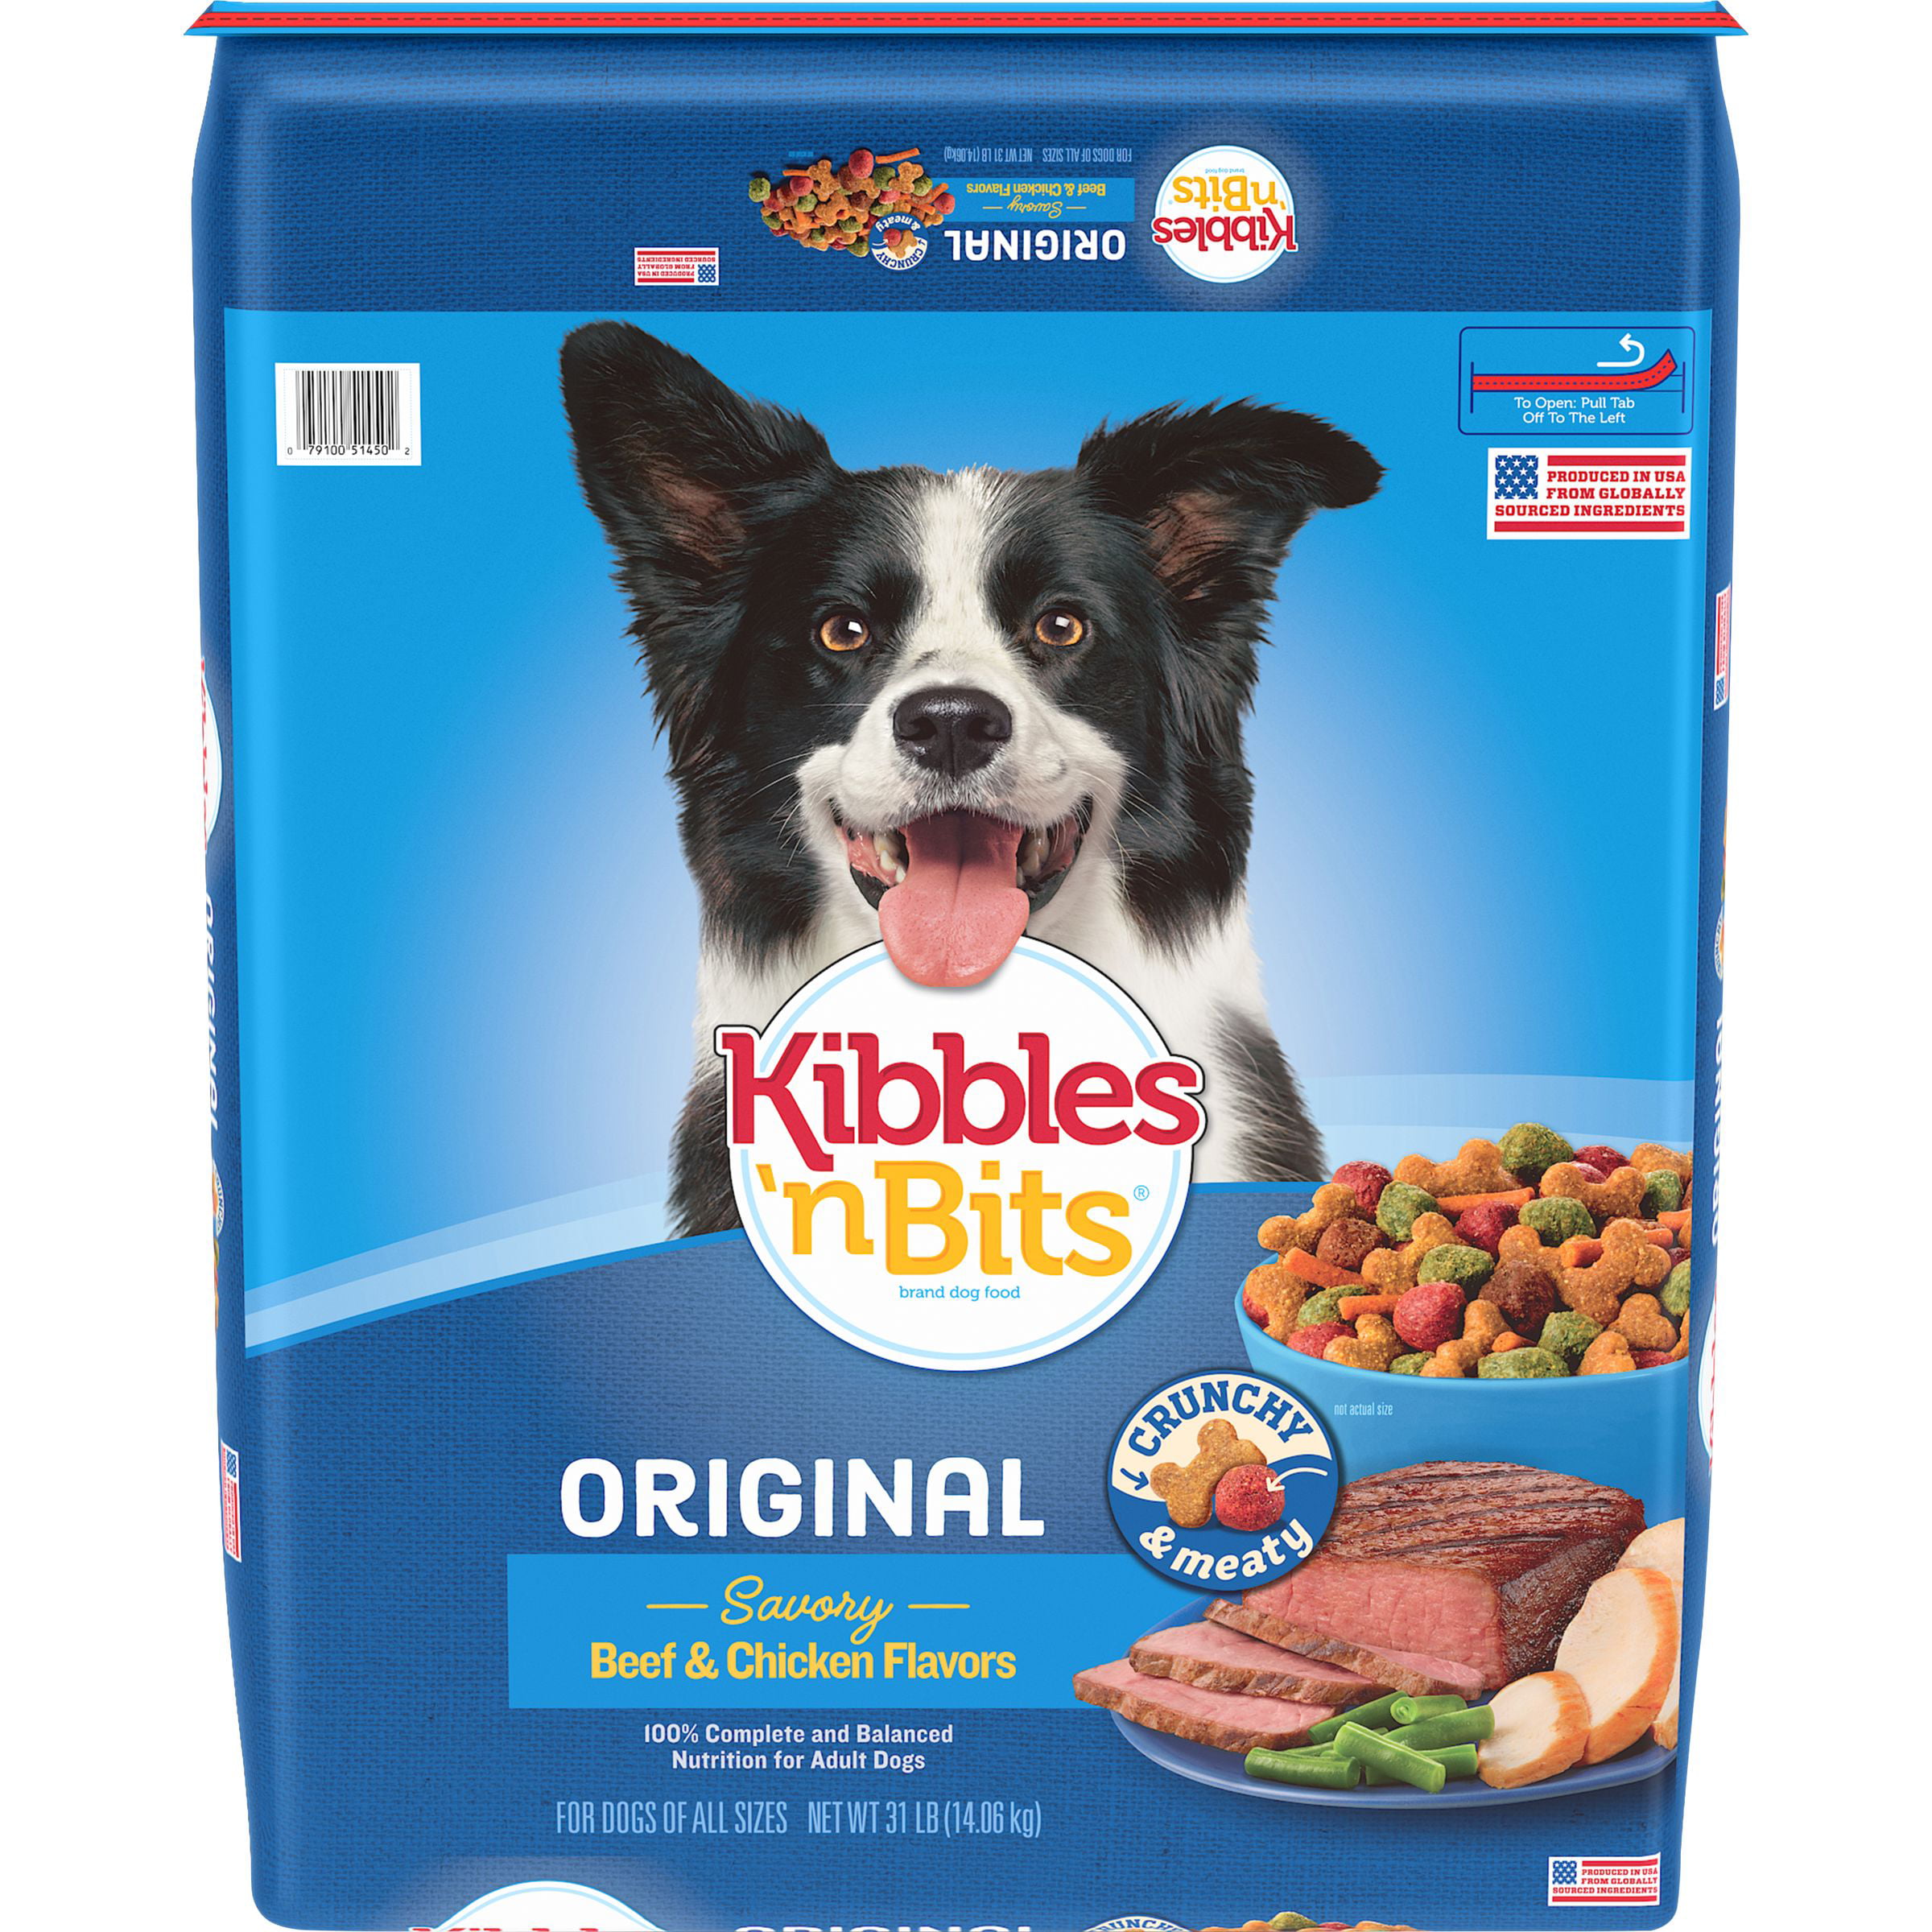 Kibbles 'n Bits Original Dry Dog Food, 31-Pound - Walmart.com - Walmart.com